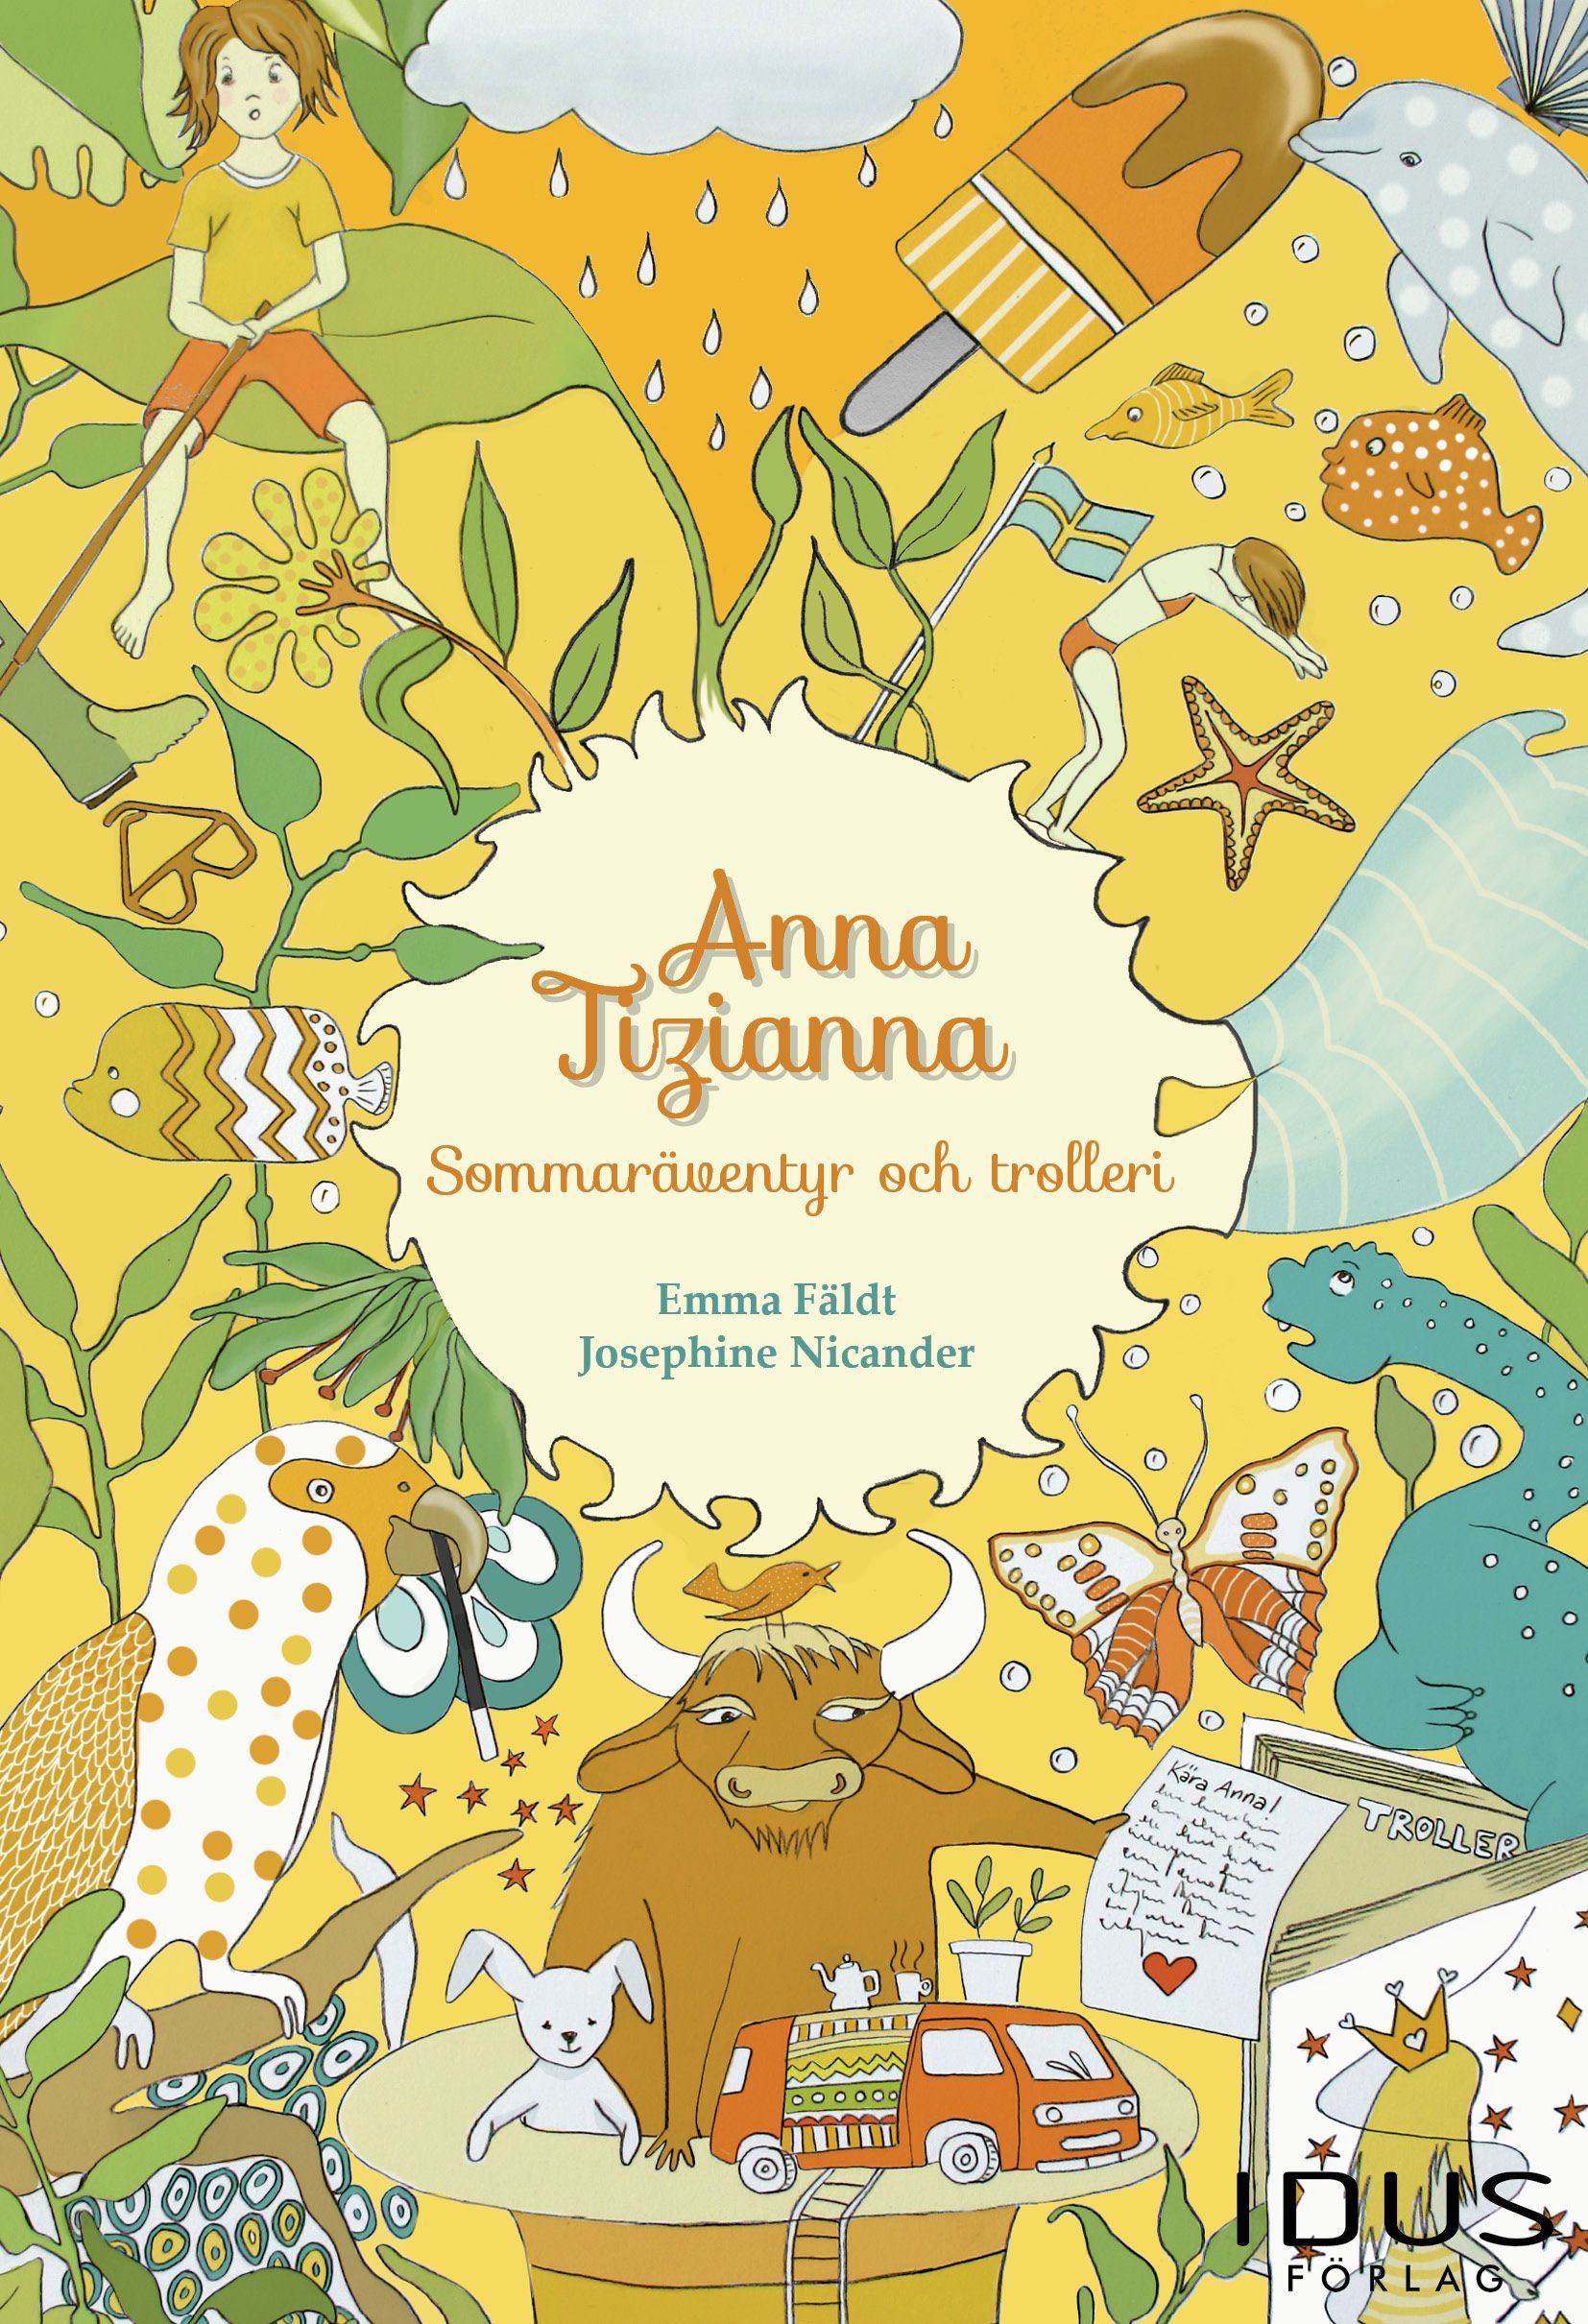 Anna Tizianna – Sommaräventyr och trolleri, eBook by Emma Fäldt